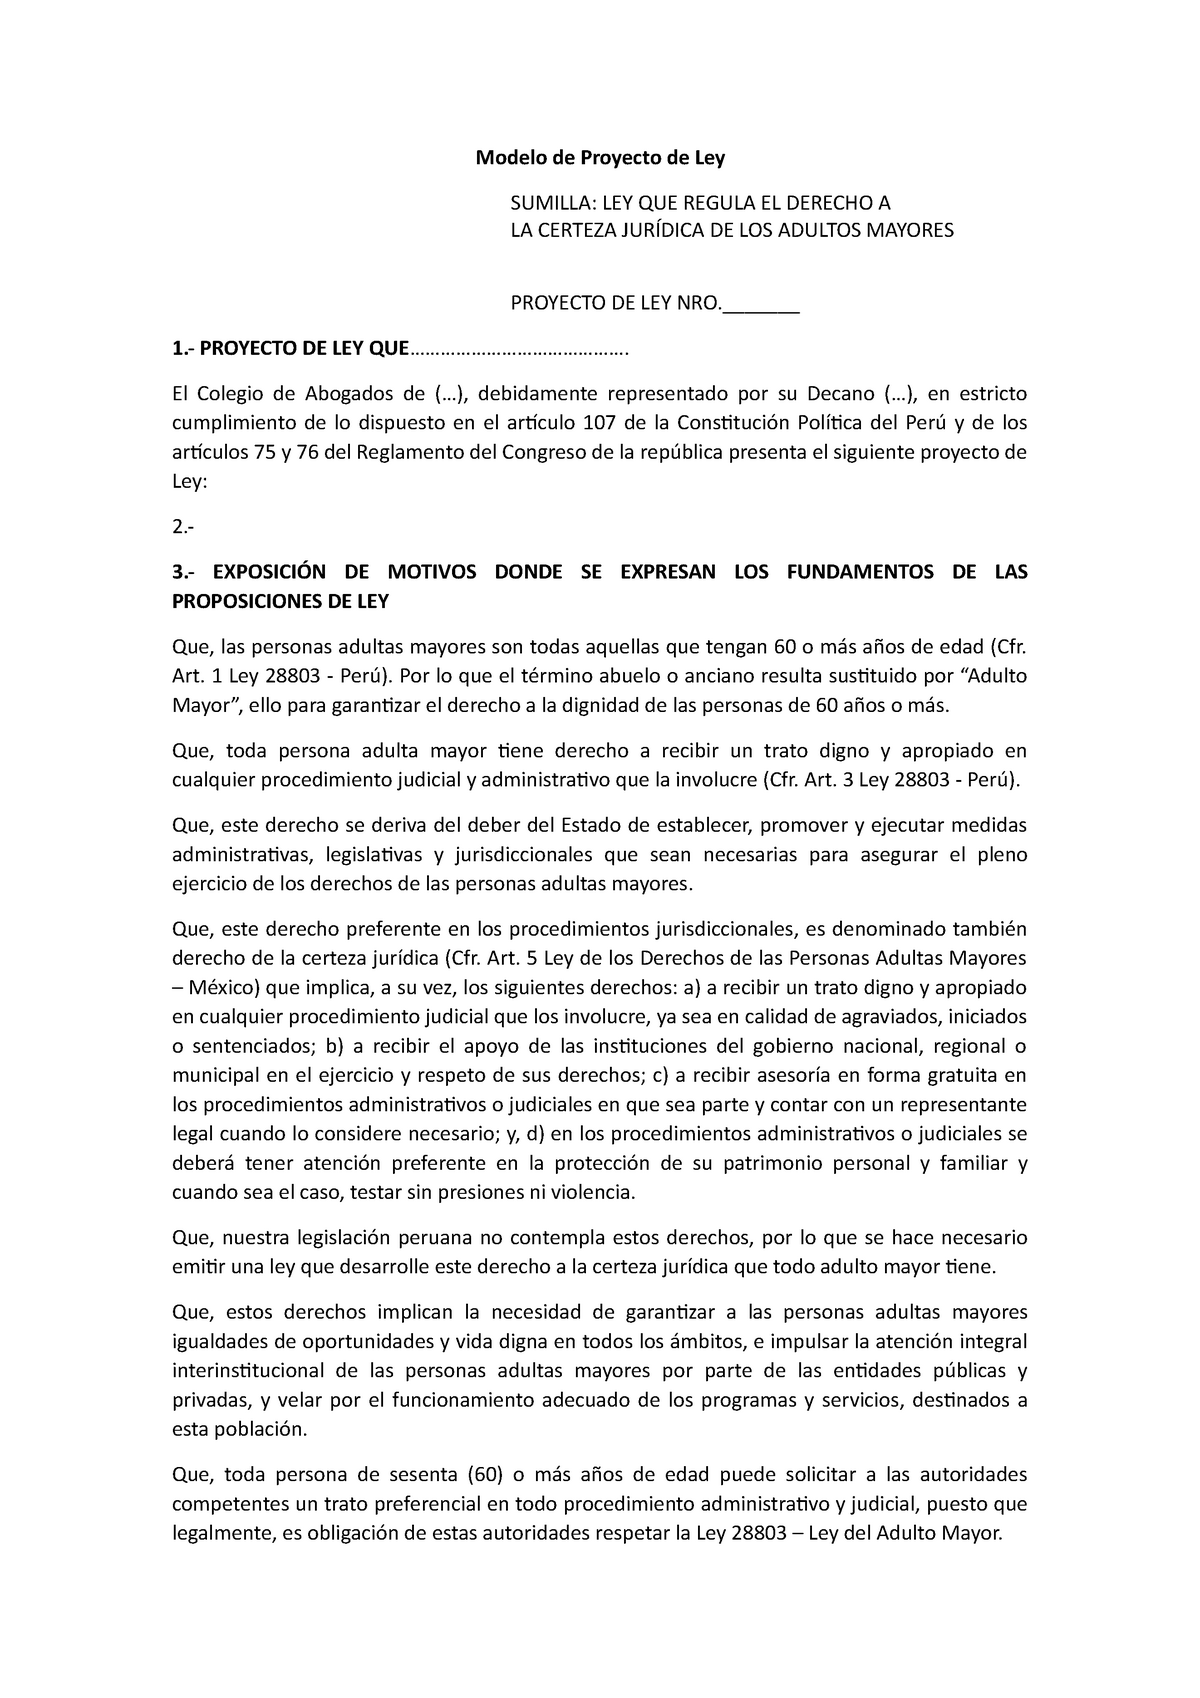 Proyecto de Ley - Apuntes 4-8 - Modelo de Proyecto de Ley SUMILLA: LEY QUE  REGULA EL DERECHO A LA - Studocu